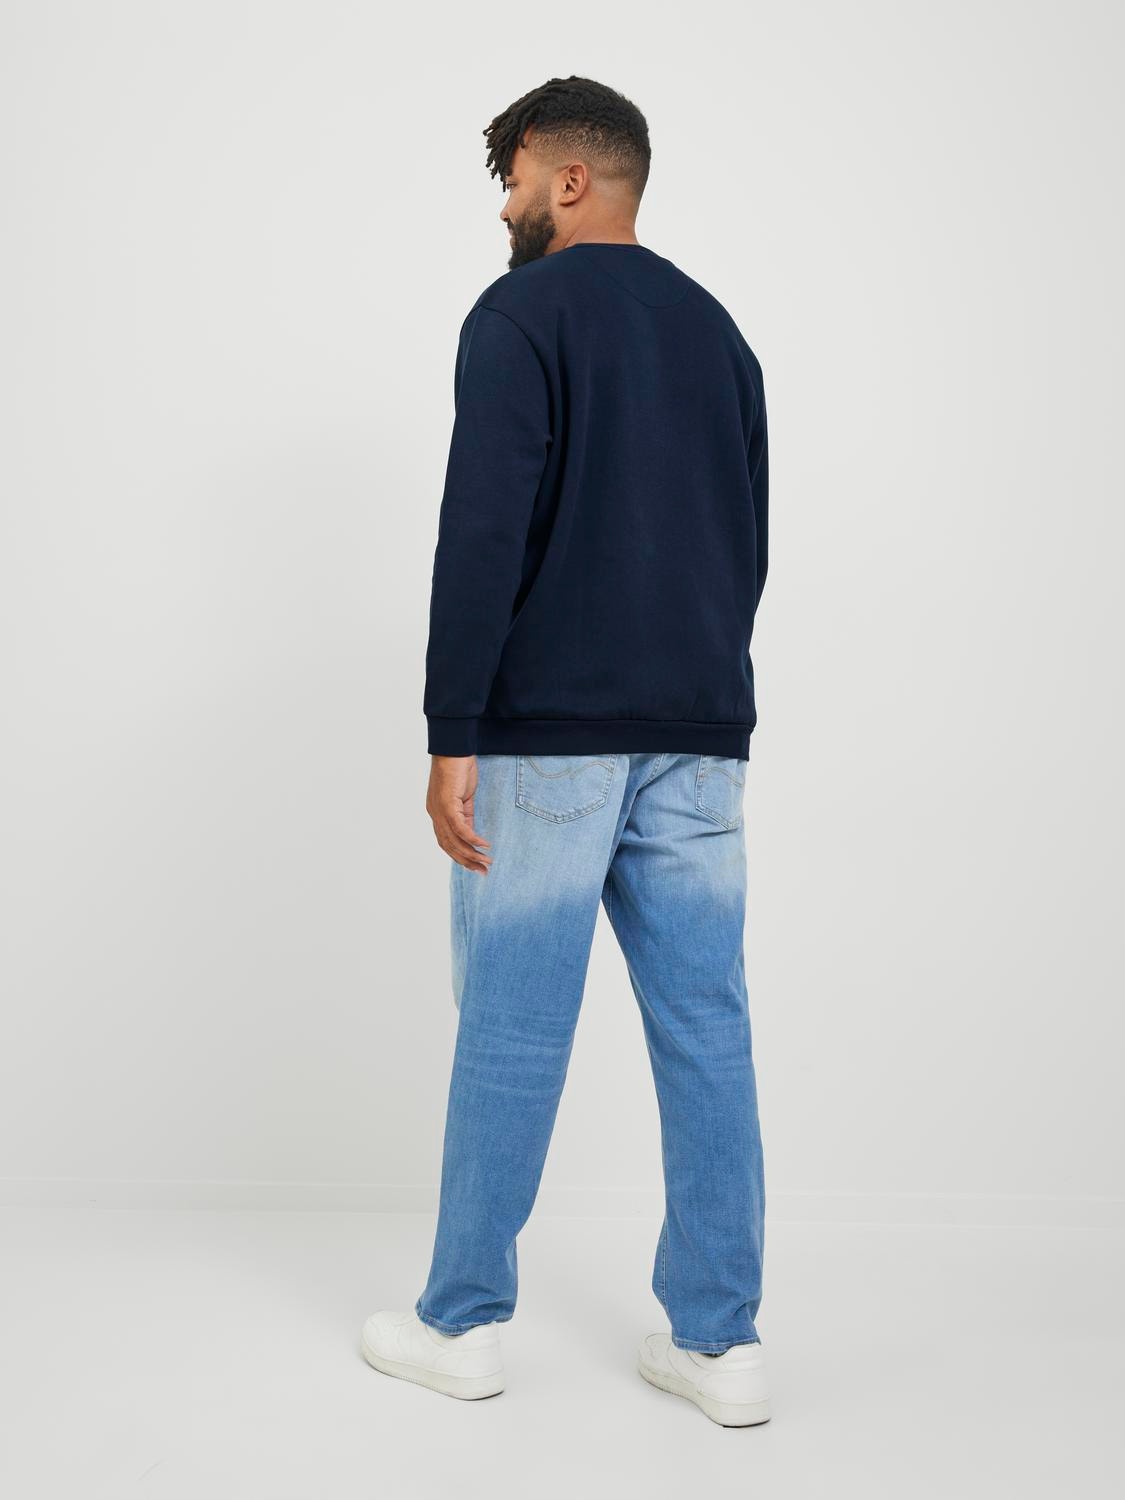 Jack & Jones Plus Size Einfarbig Sweatshirt mit Rundhals -Navy Blazer - 12250594